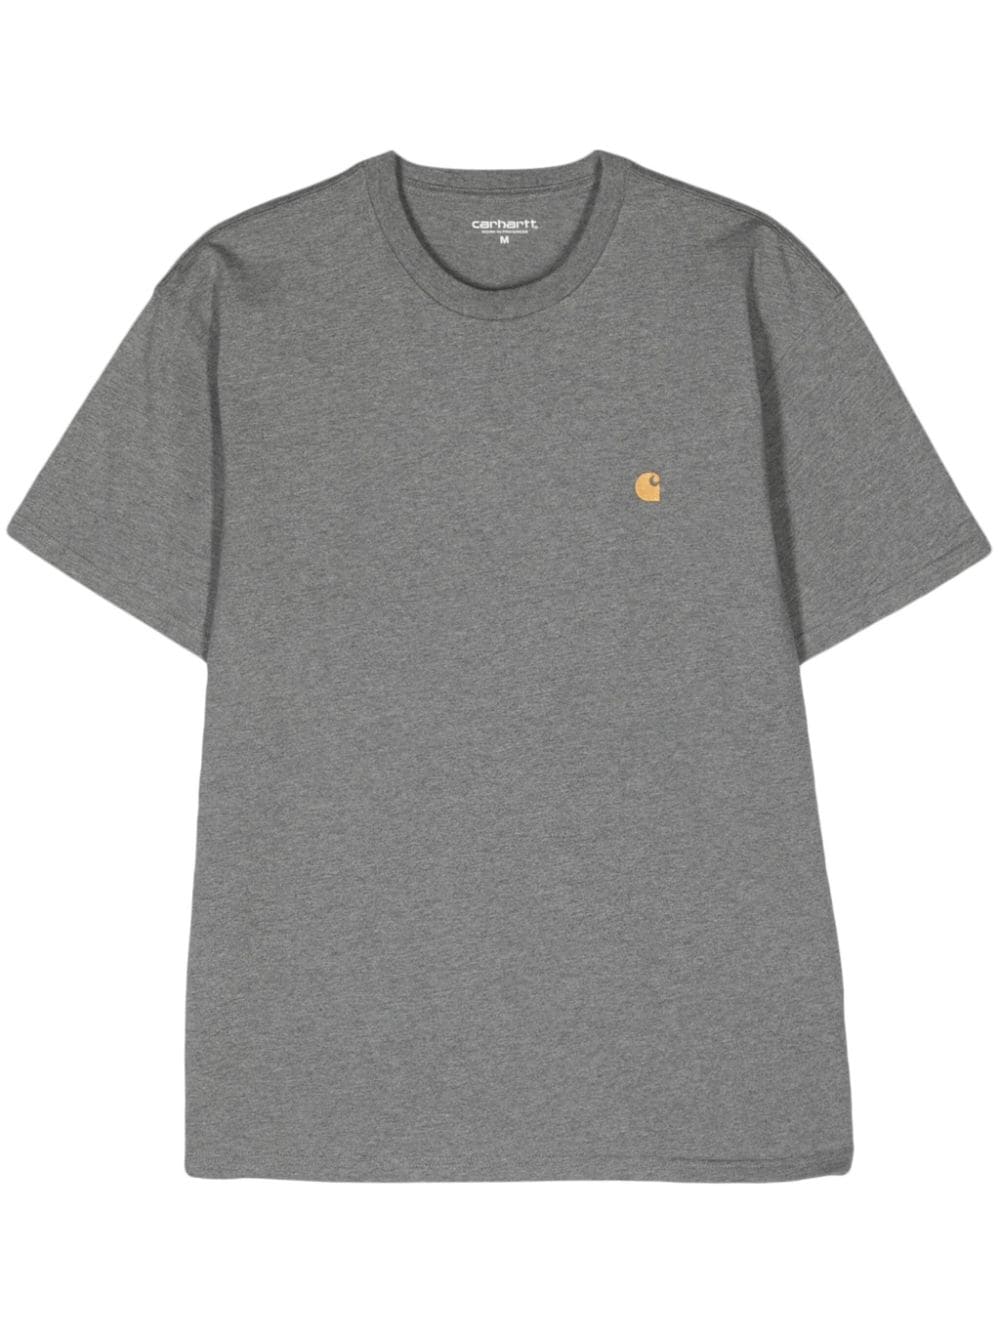 Carhartt WIP S/S Chase T-Shirt aus Baumwolle - Grau